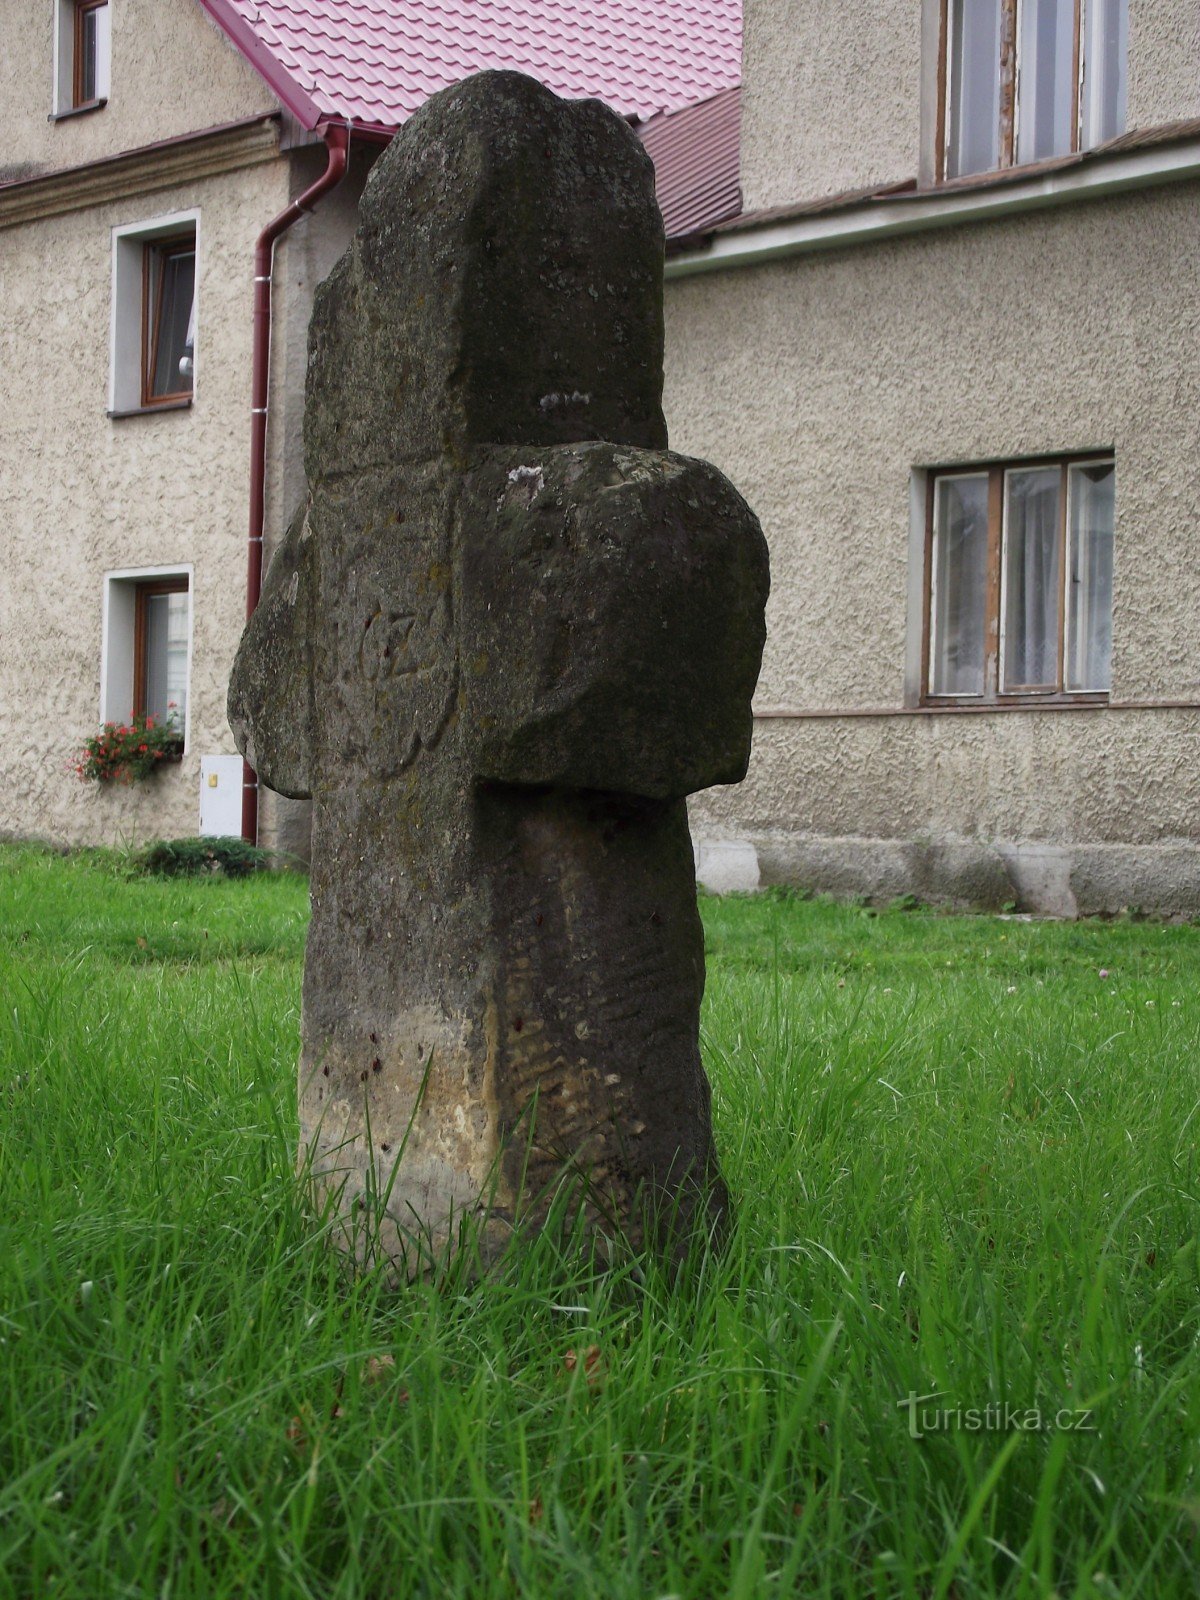 Střelice (near Uničov) – peace crosses